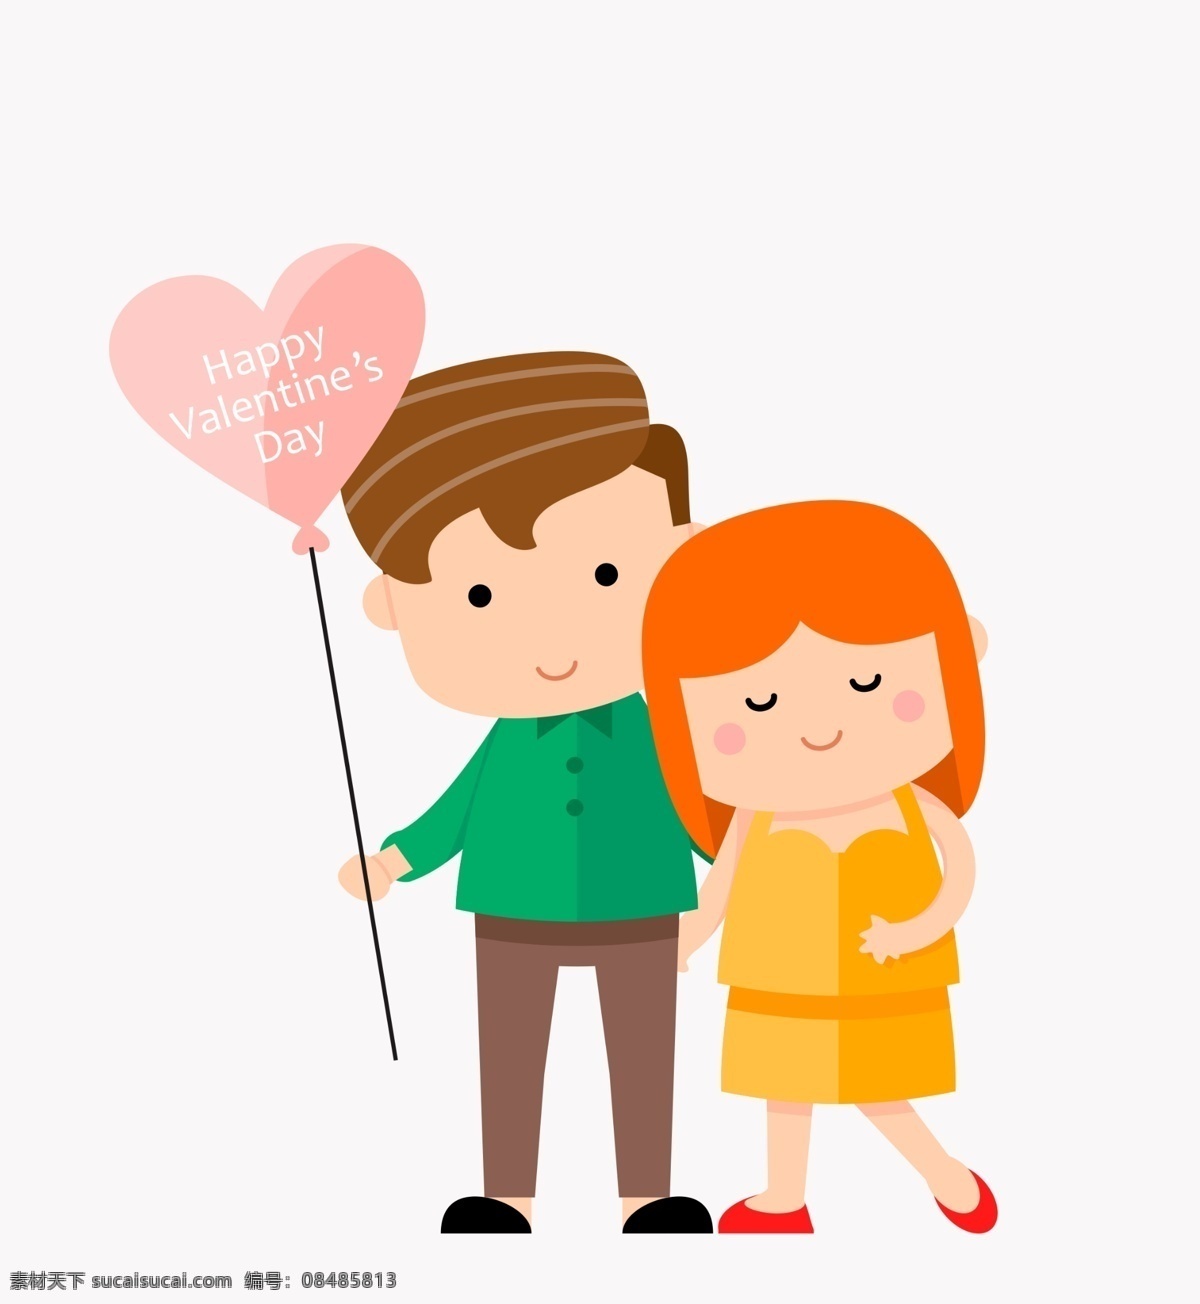 卡通情侣 情侣 卡通人物 气球 心形气球 标识 动漫动画 动漫人物